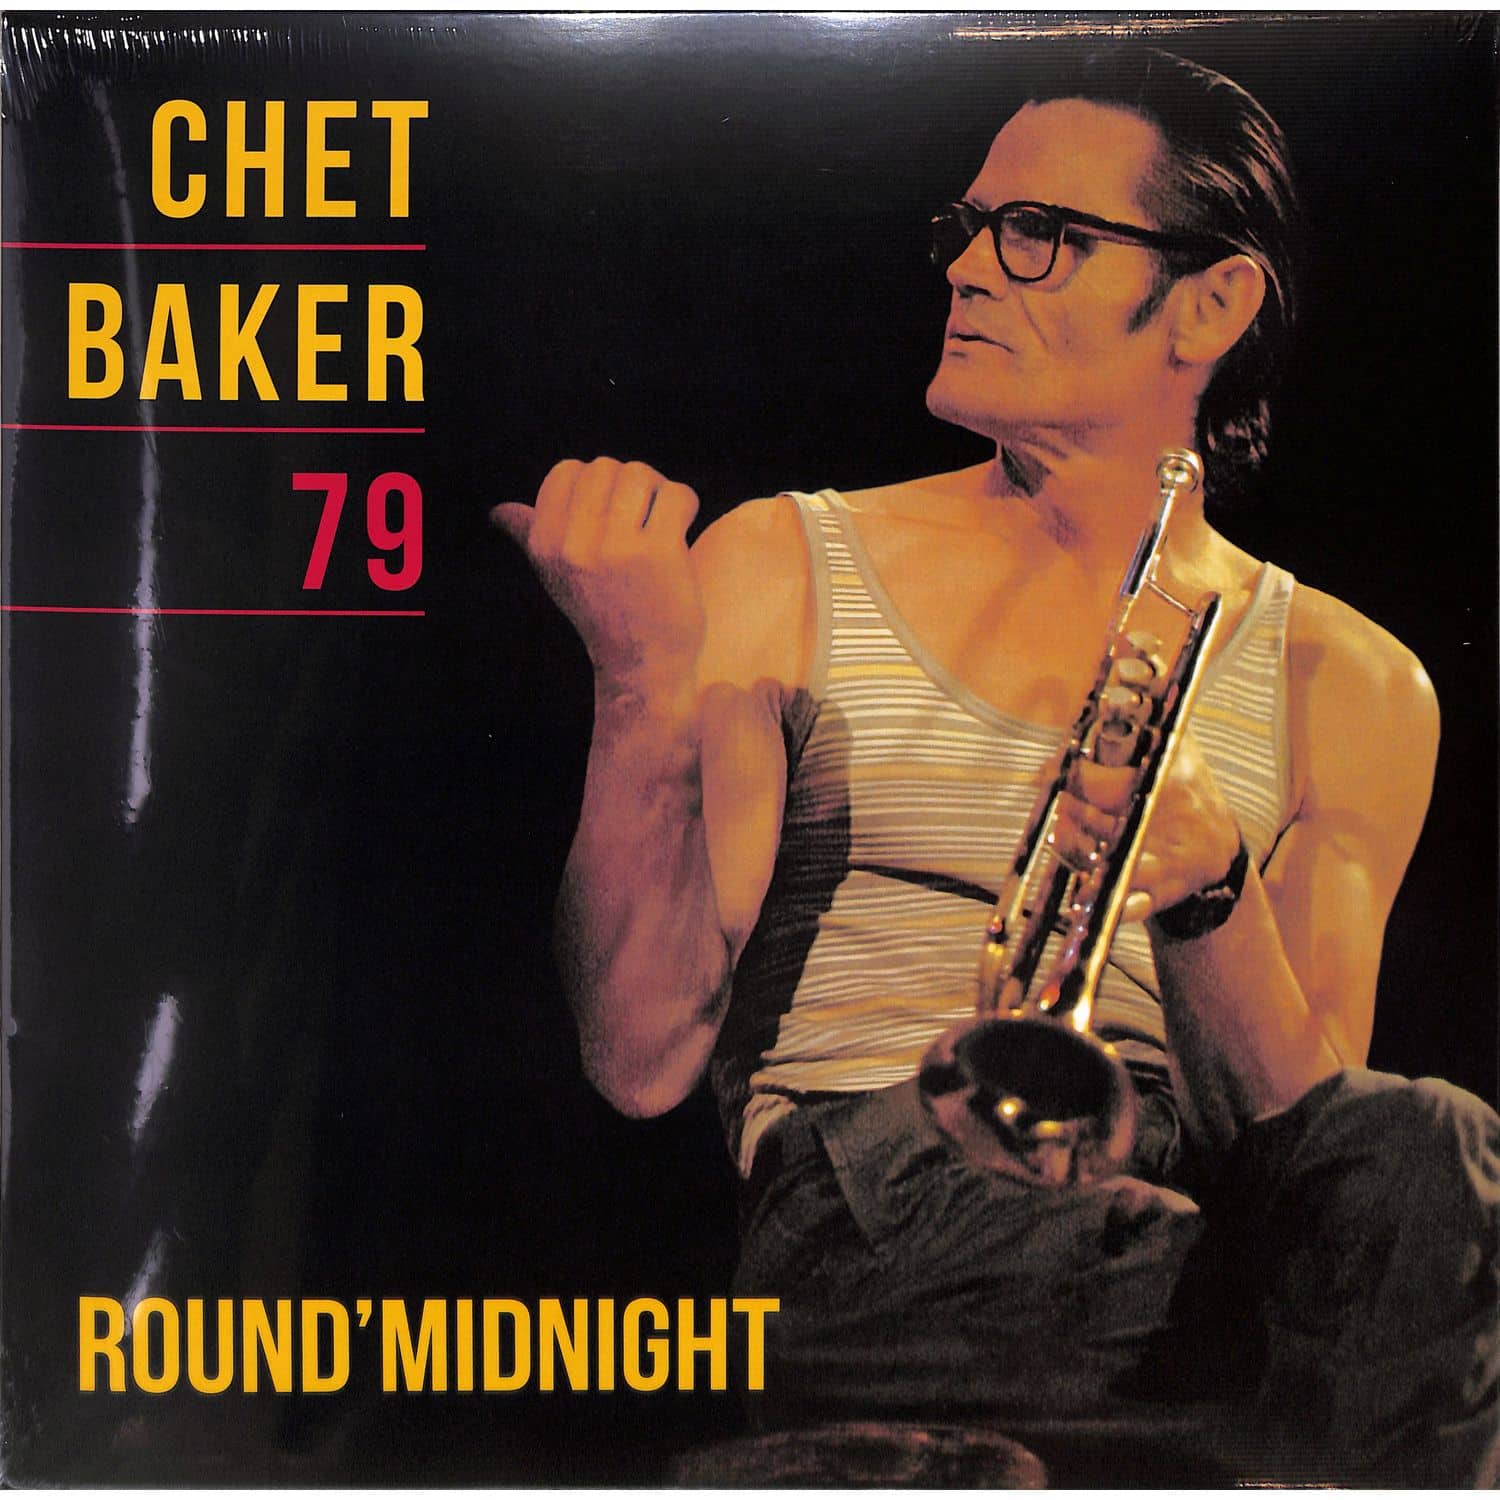 Chet Baker - ROUND MIDNIGHT 79 